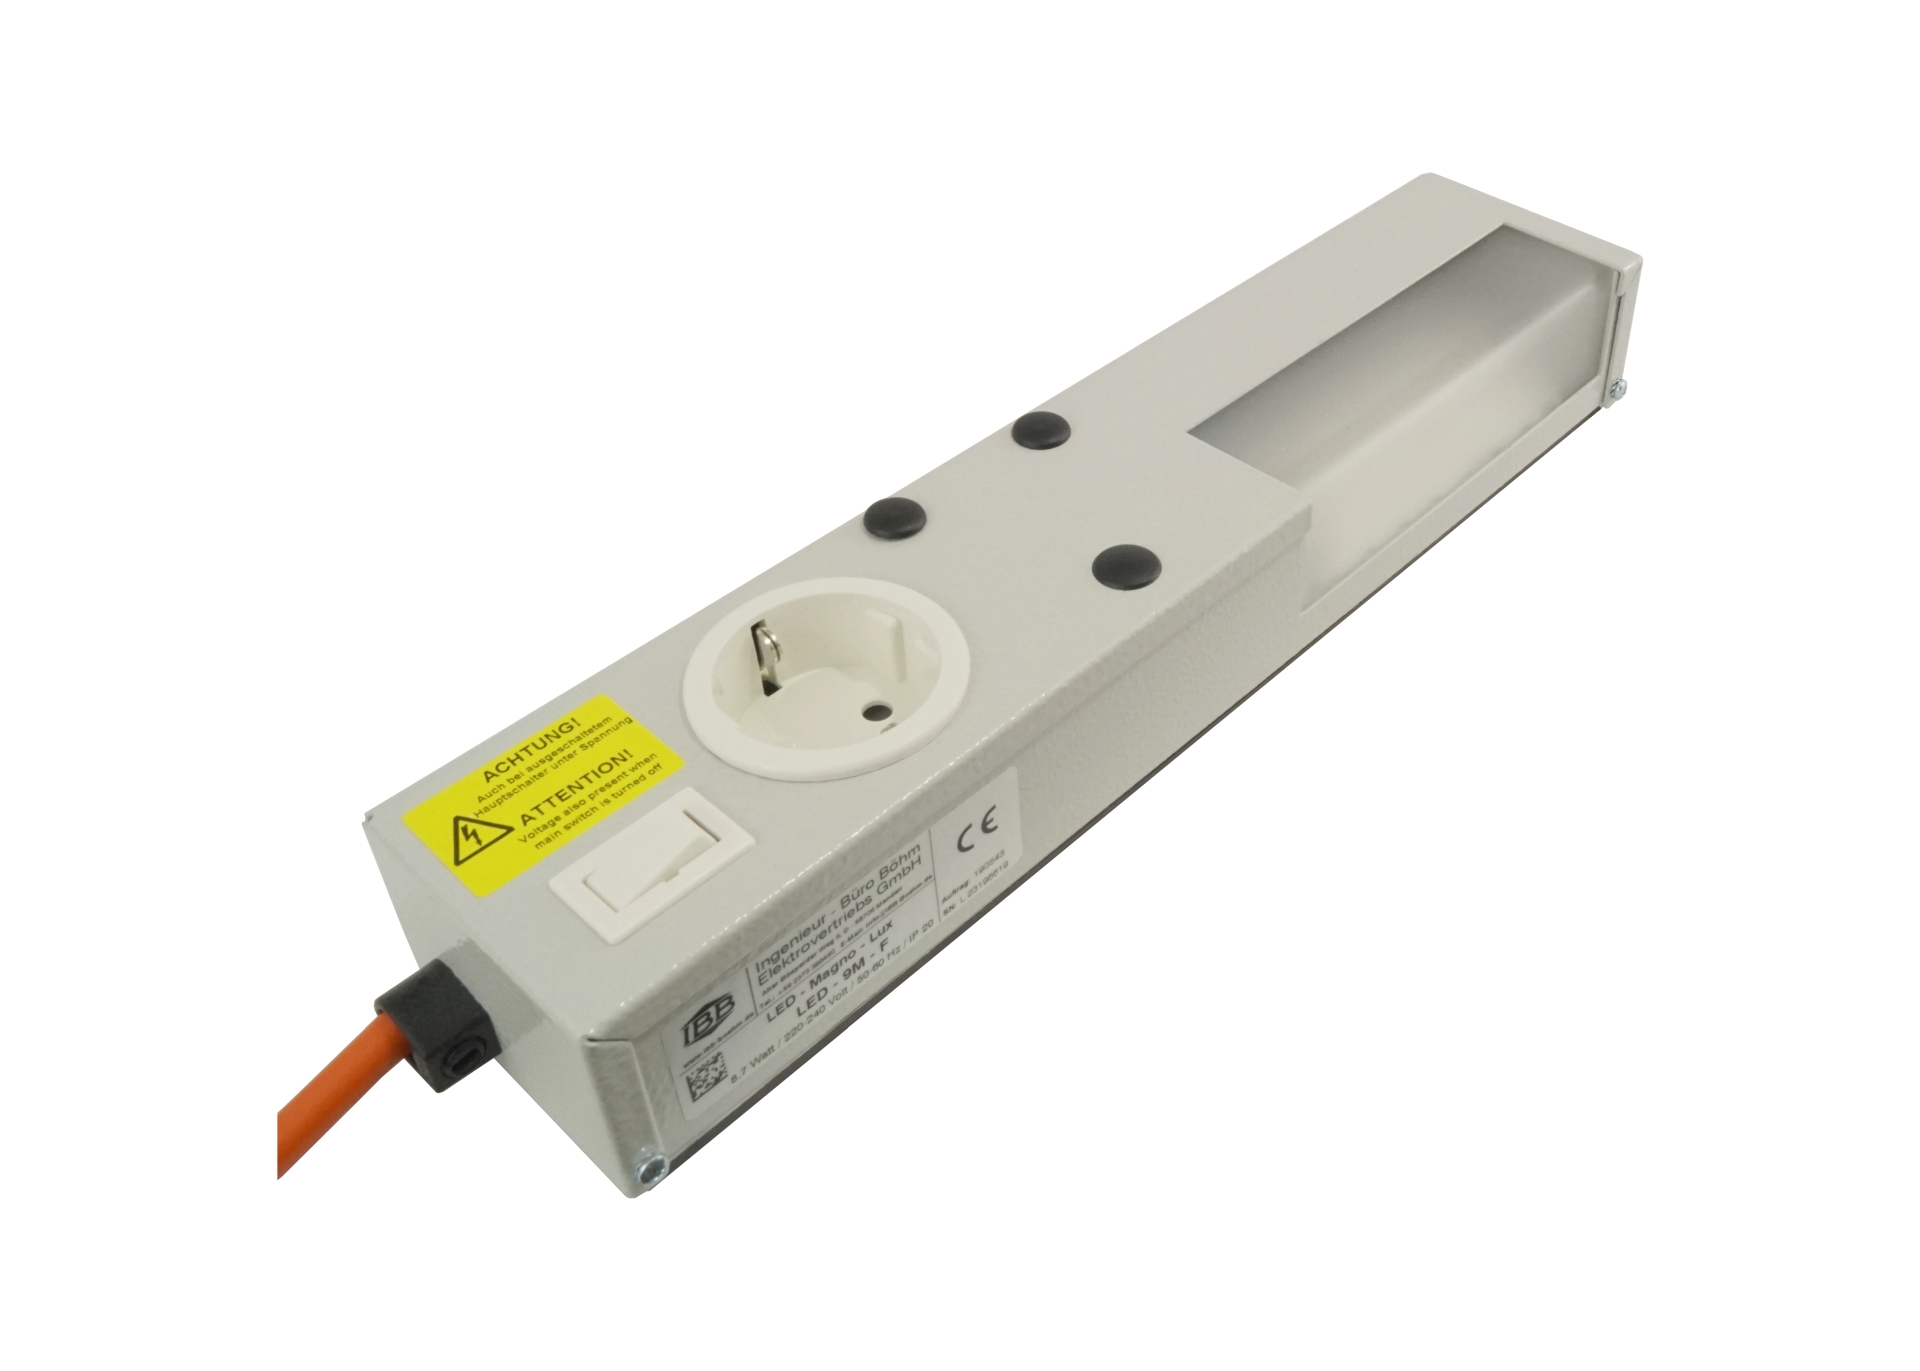 Abbildung LED Schaltschrankleuchte LED-Magneto-Lux 8 Watt, 220-240 Volt/50/60 Hz | Magnetbefestigung, ab 400mm Schrankbreite